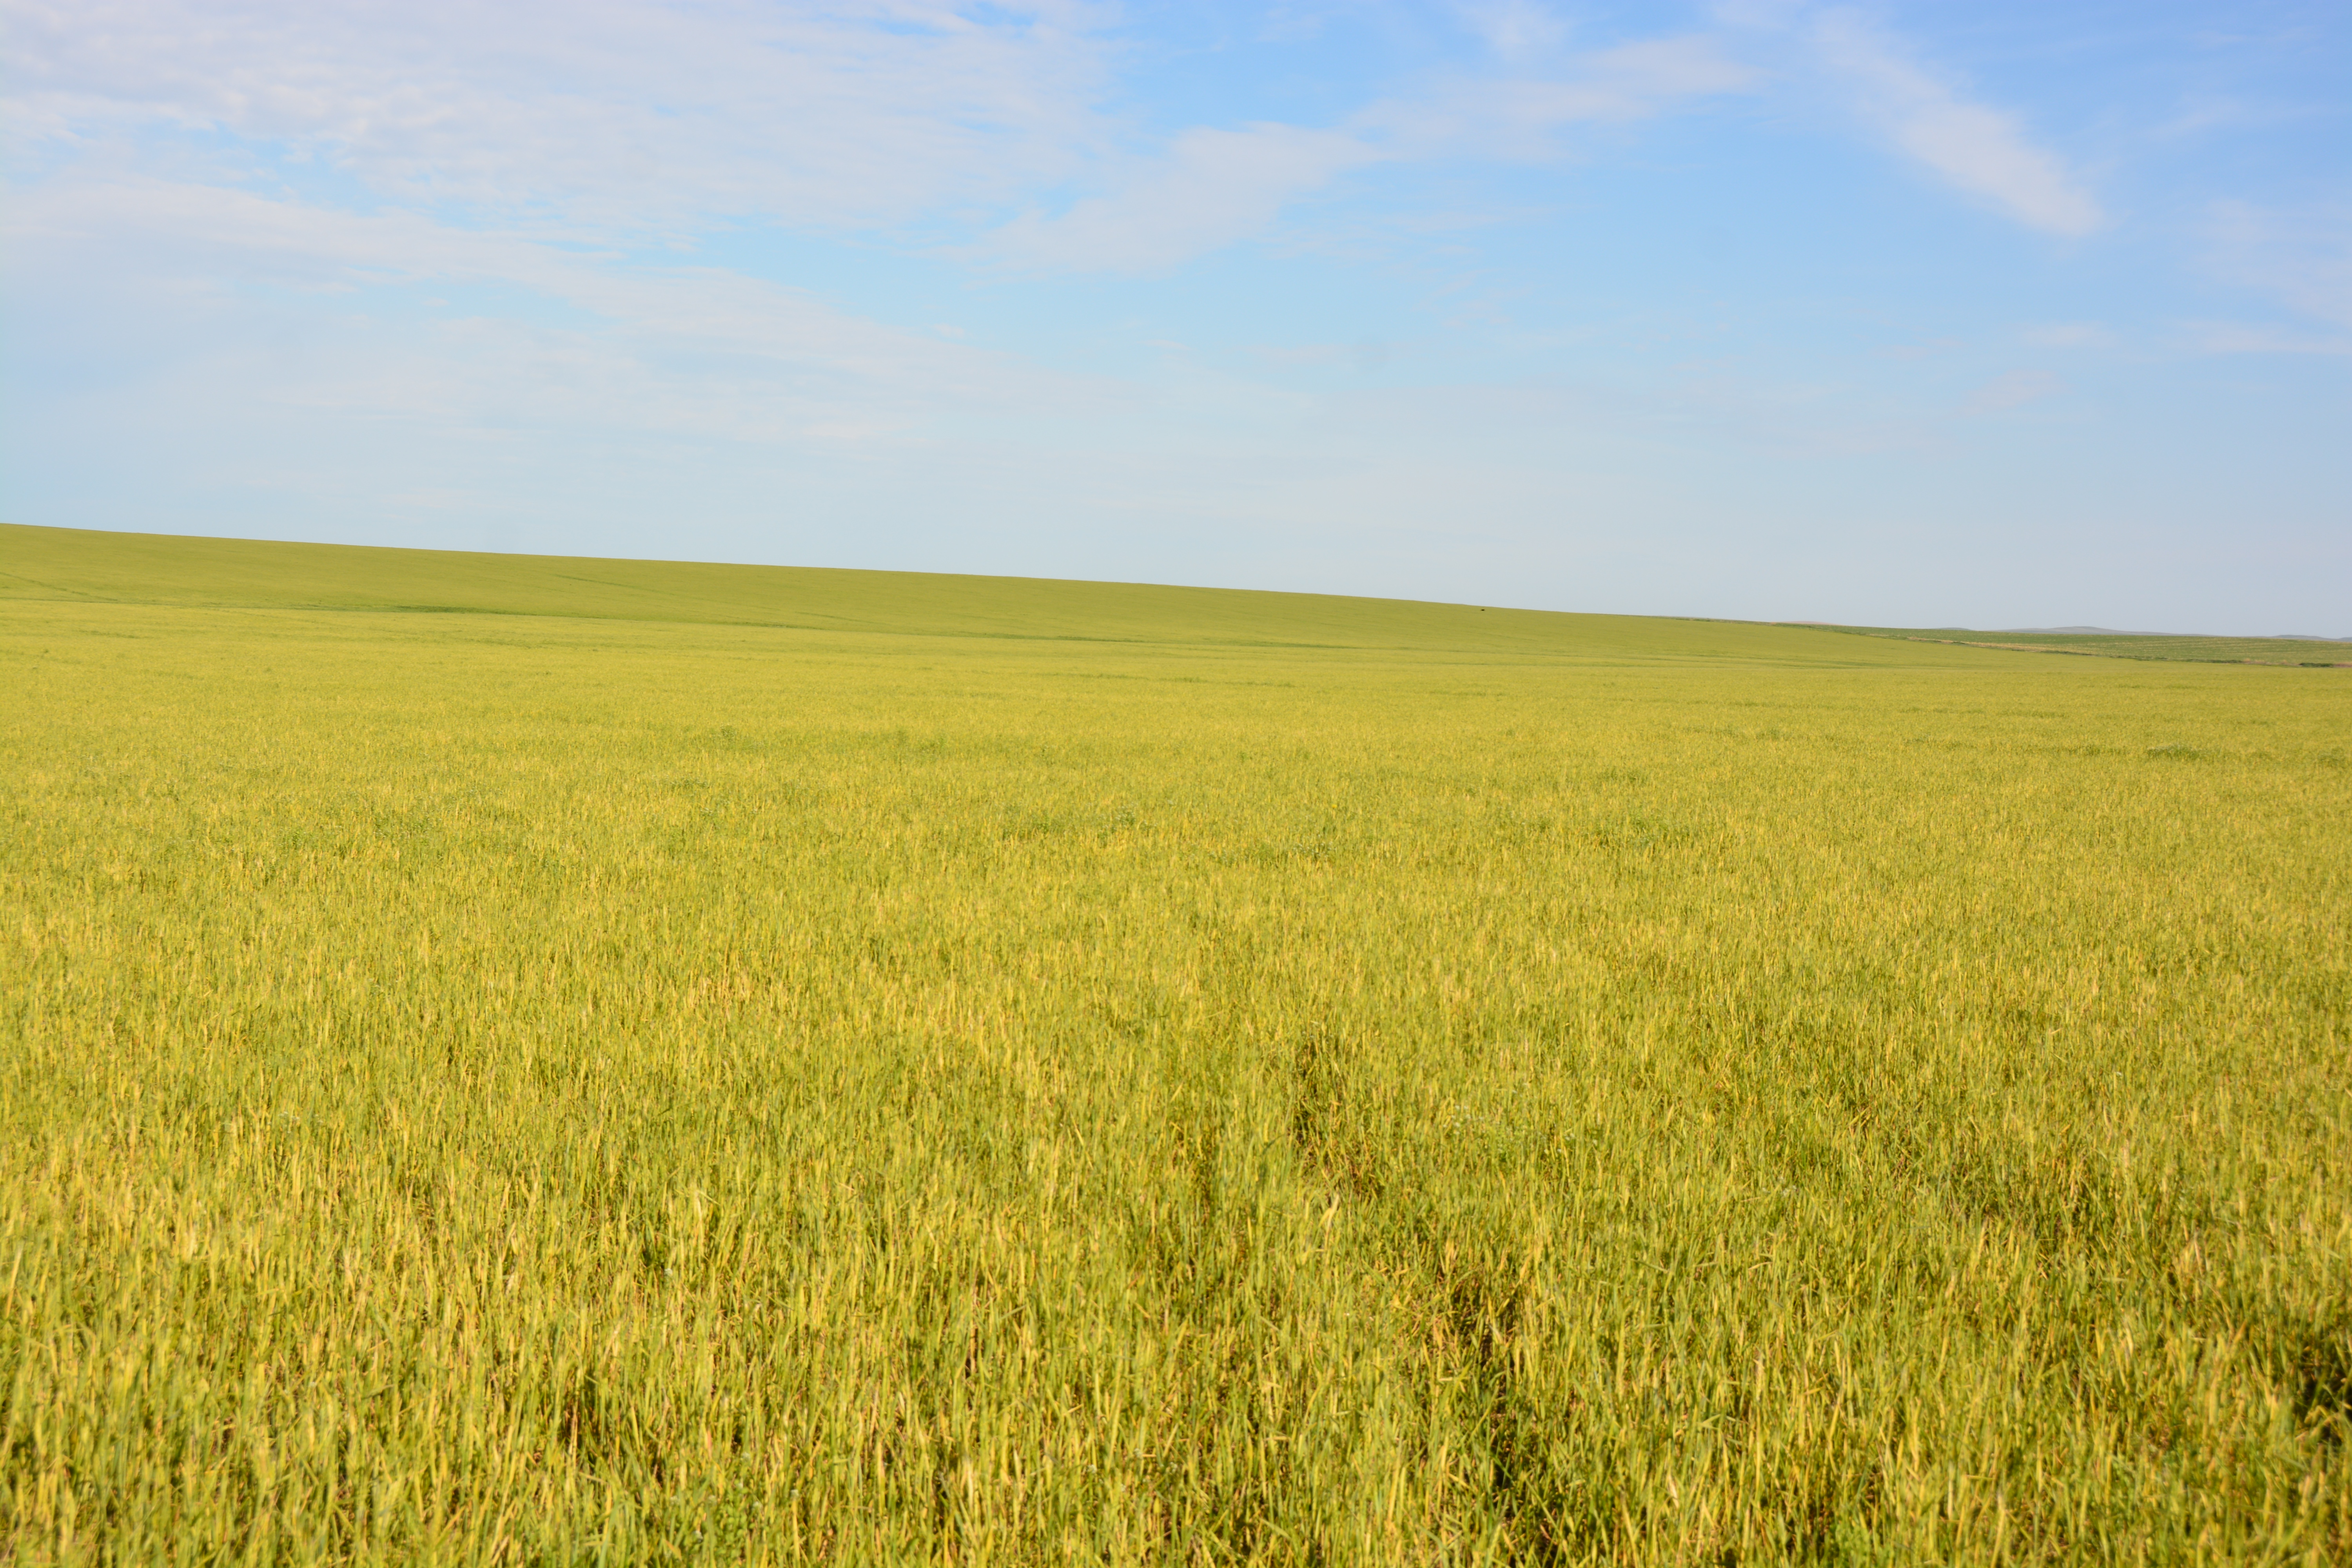 Wheat streak mosaic in a field. 